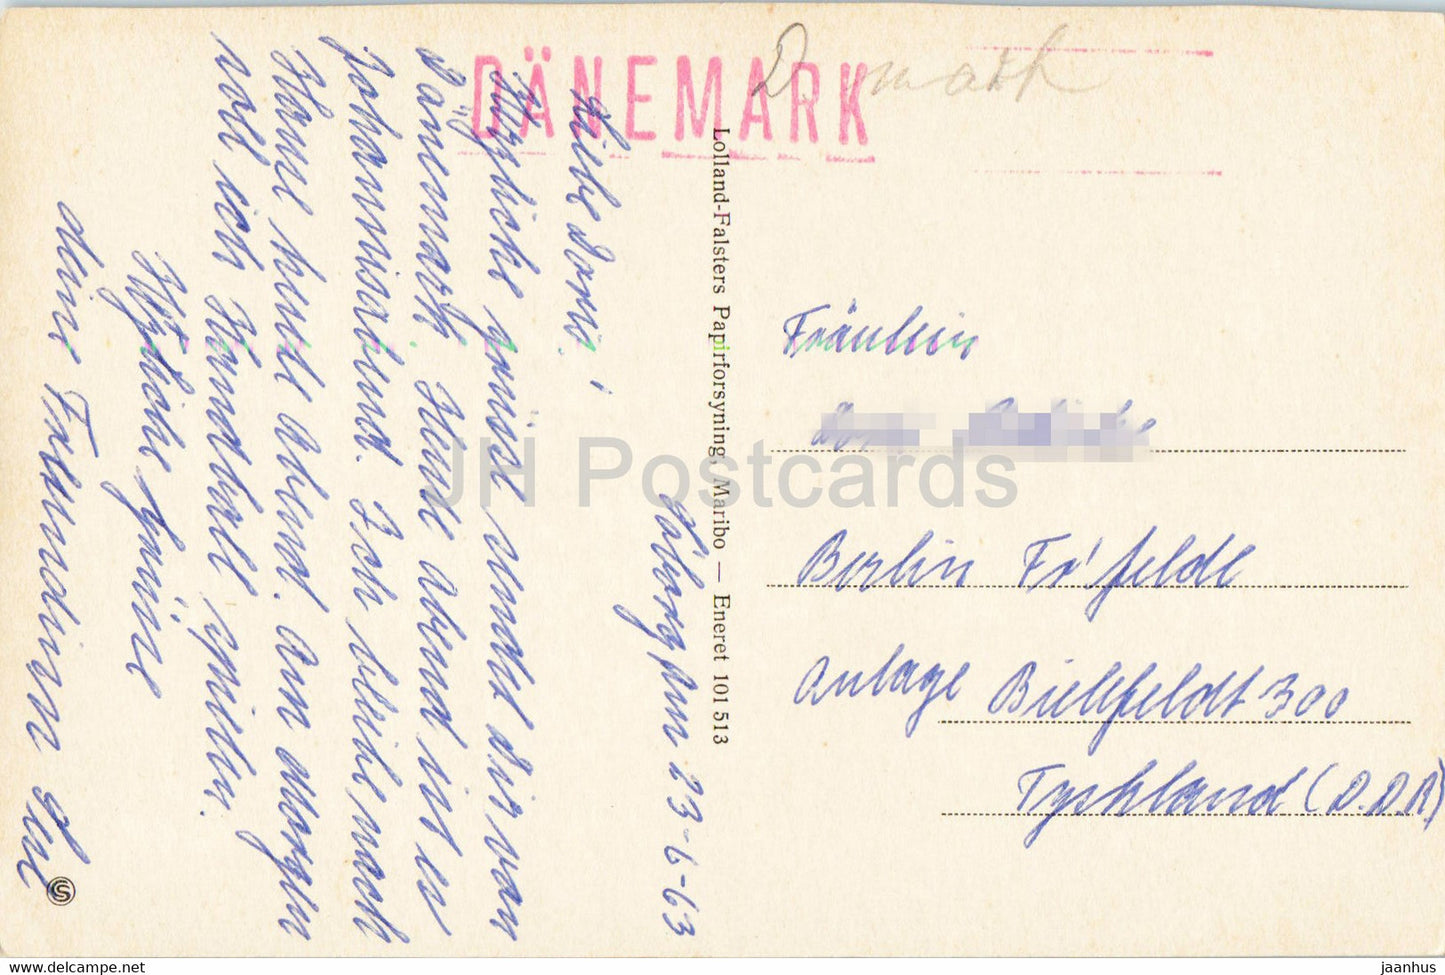 Havnevej - Rodby Havn - alte Postkarte - 1963 - Dänemark - gebraucht